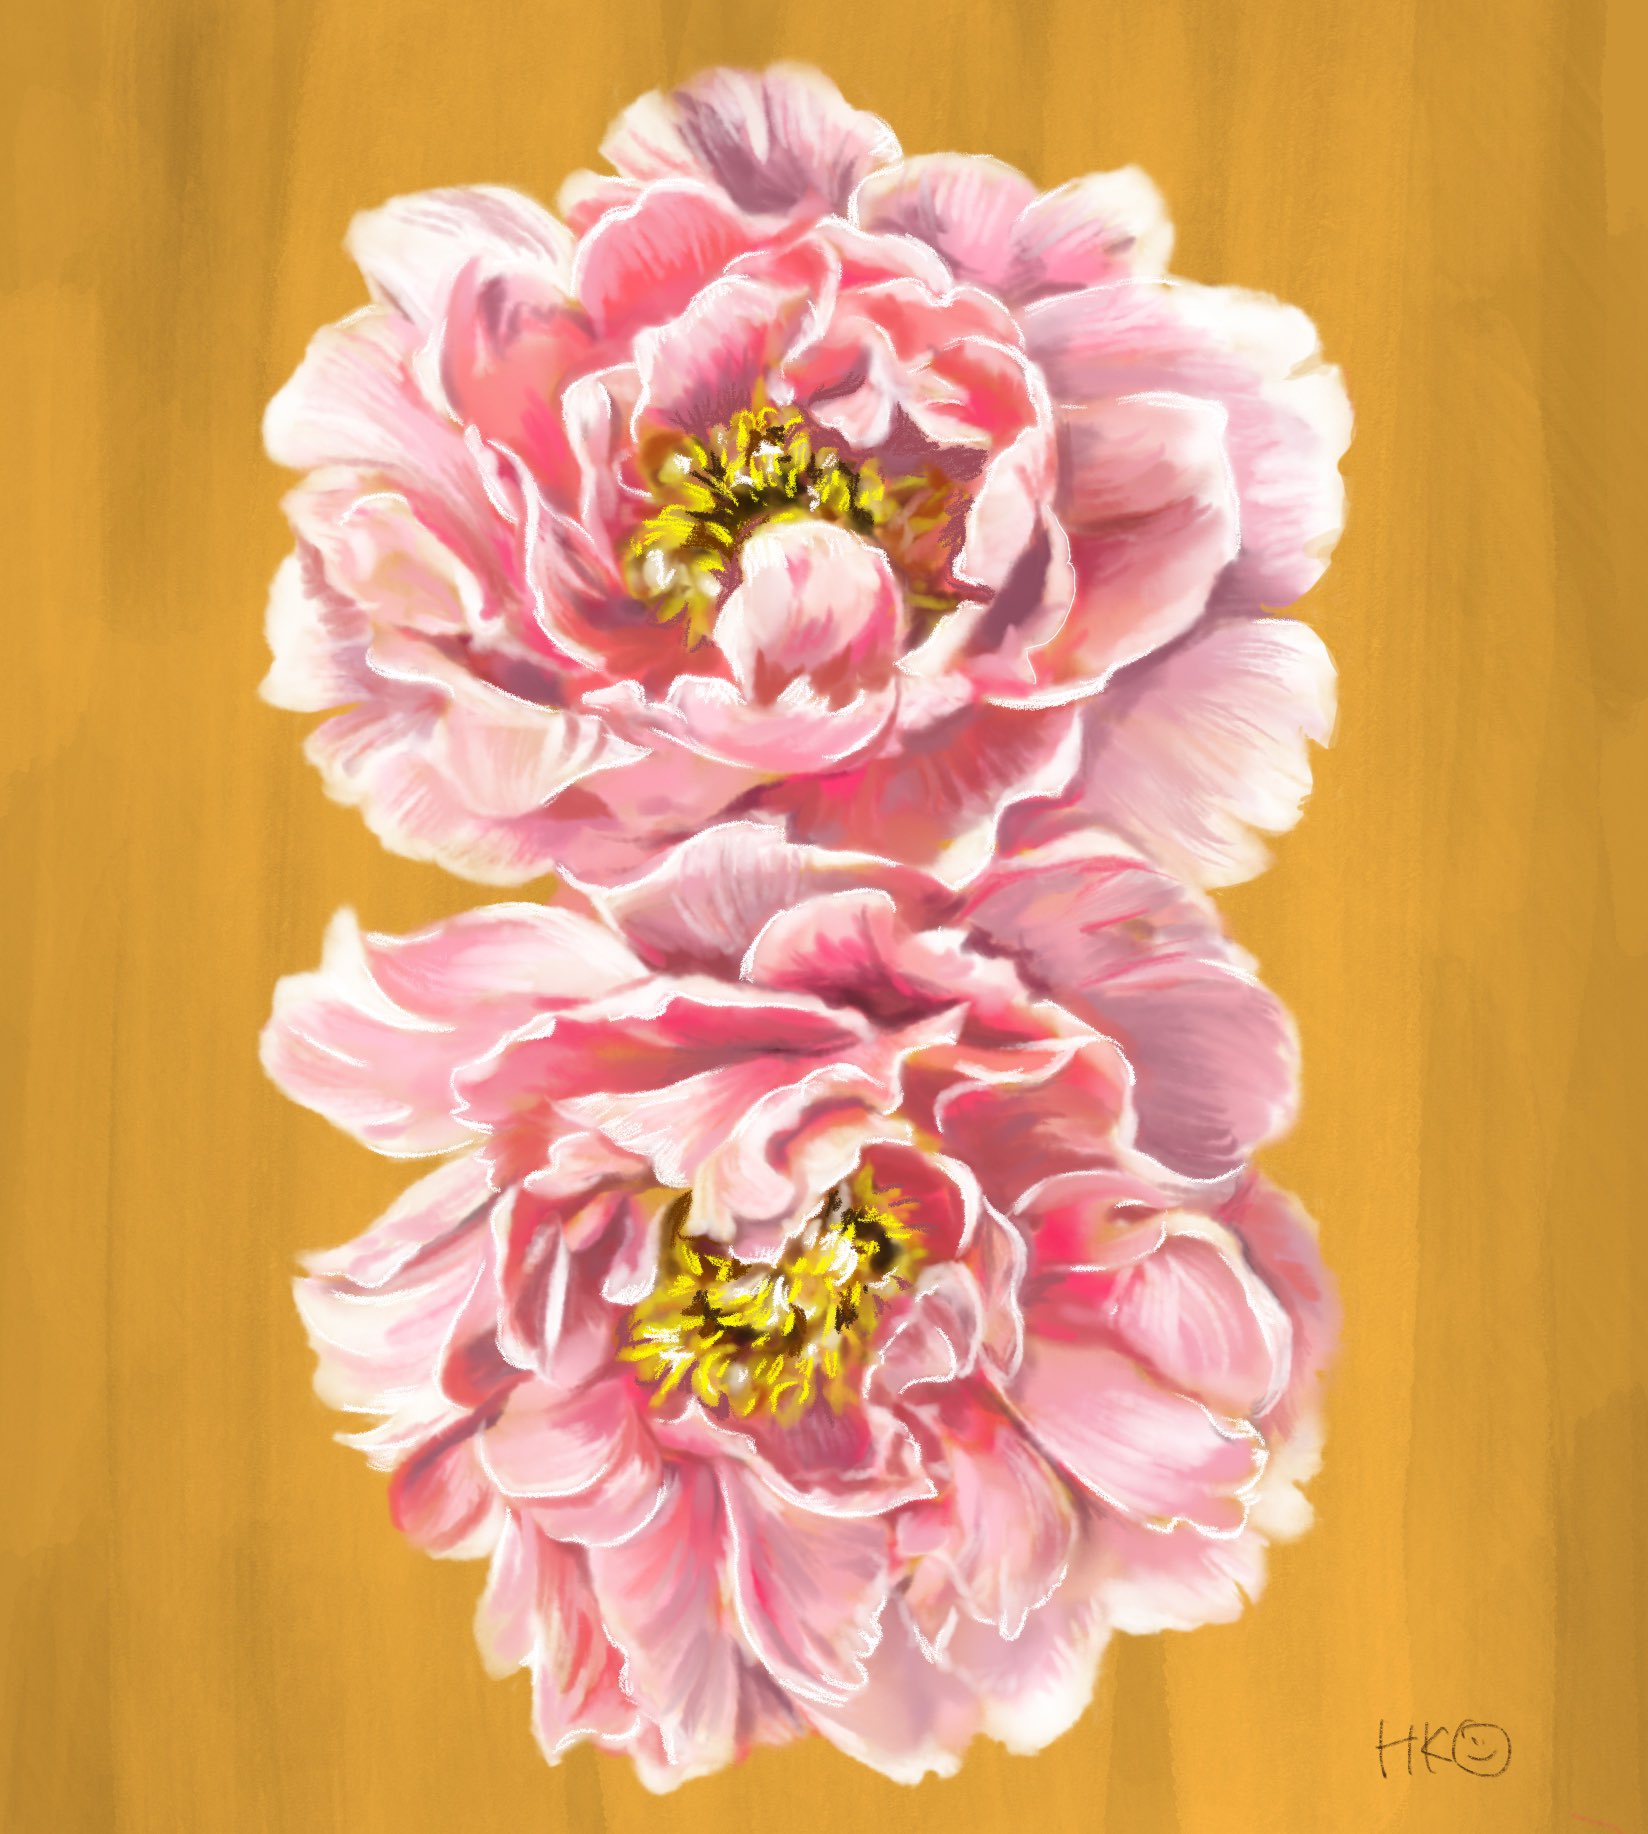 Hk 日本画っぽく芍薬を描きました 花 芍薬 イラスト デジタル T Co Gpegrdia7b Twitter